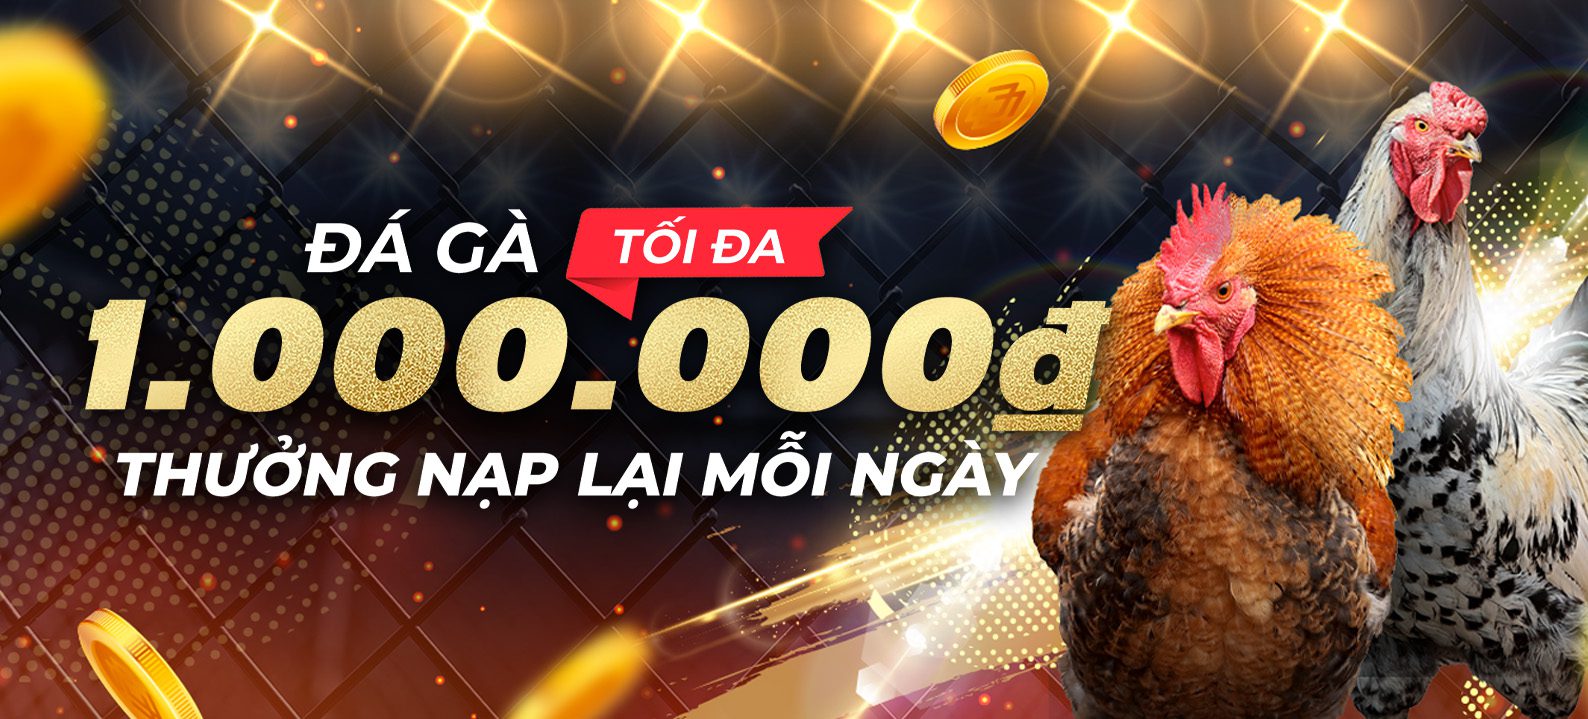 Casinomcw Nạp lại hàng ngày – Đá Gà: 12% lên đến 1.000.000 VND